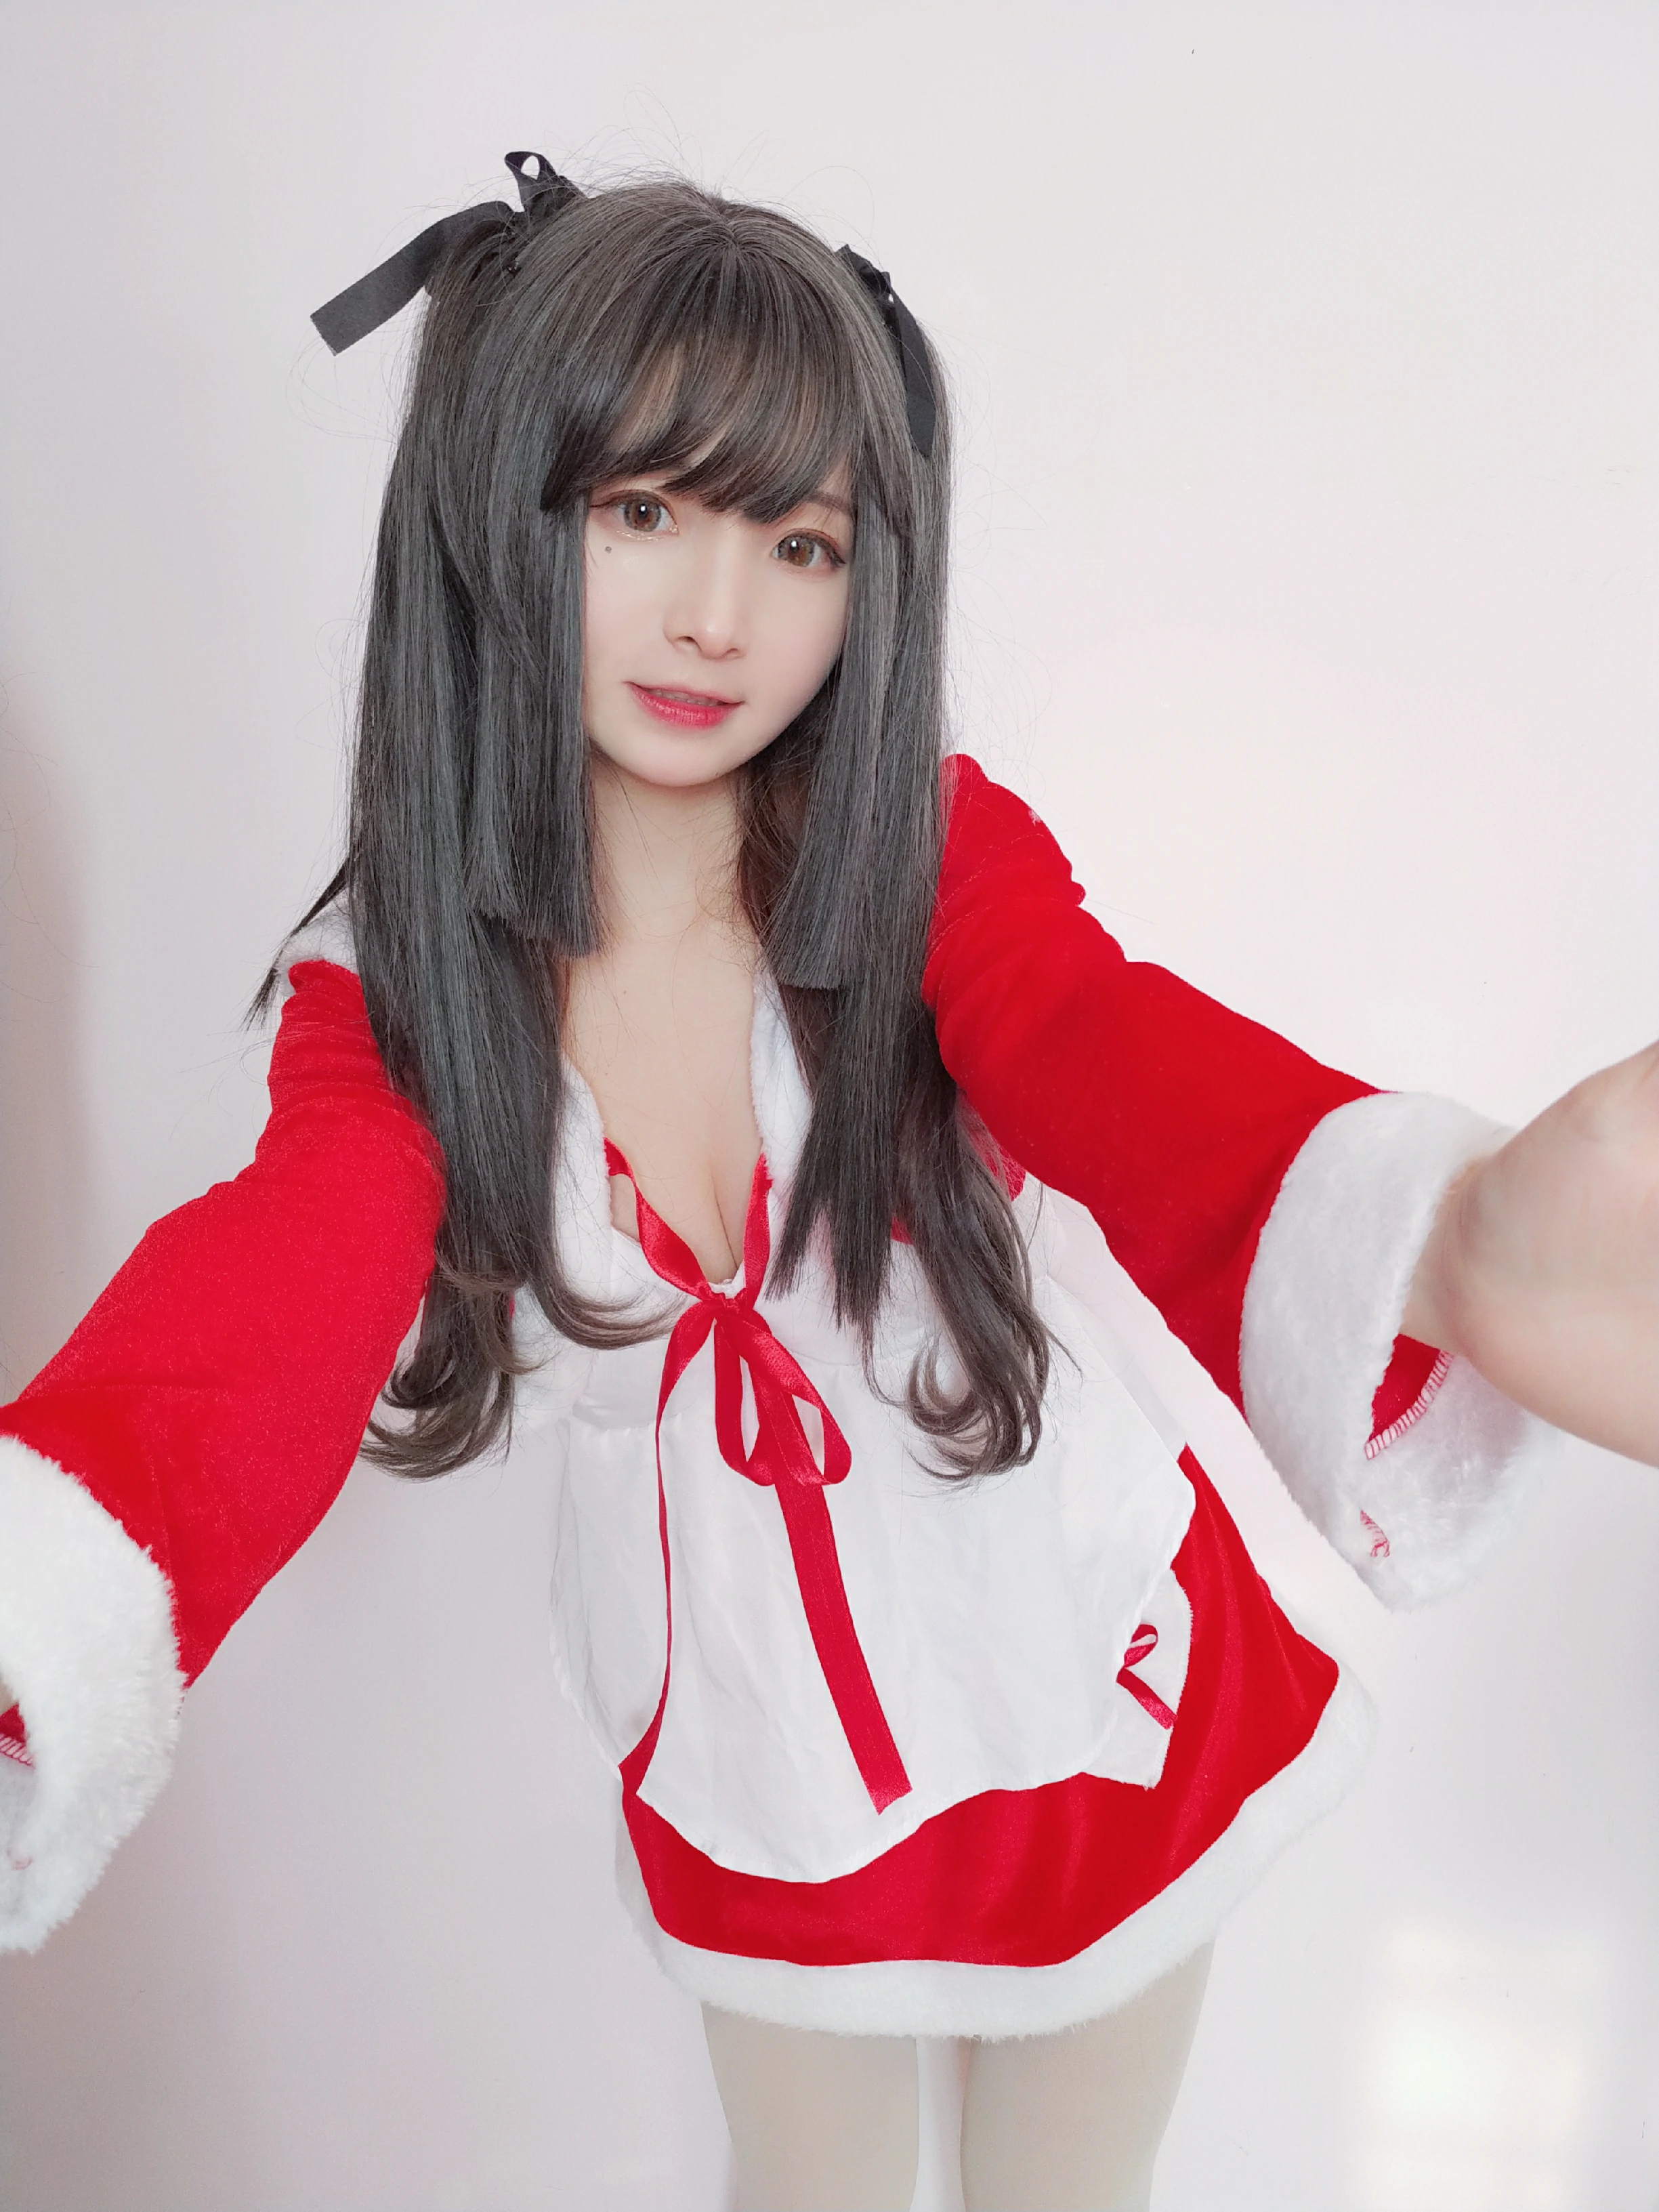 清纯萝莉少女 古川kagura 圣诞节 红色圣诞女郎制服裙加白色丝袜美腿私房写真,